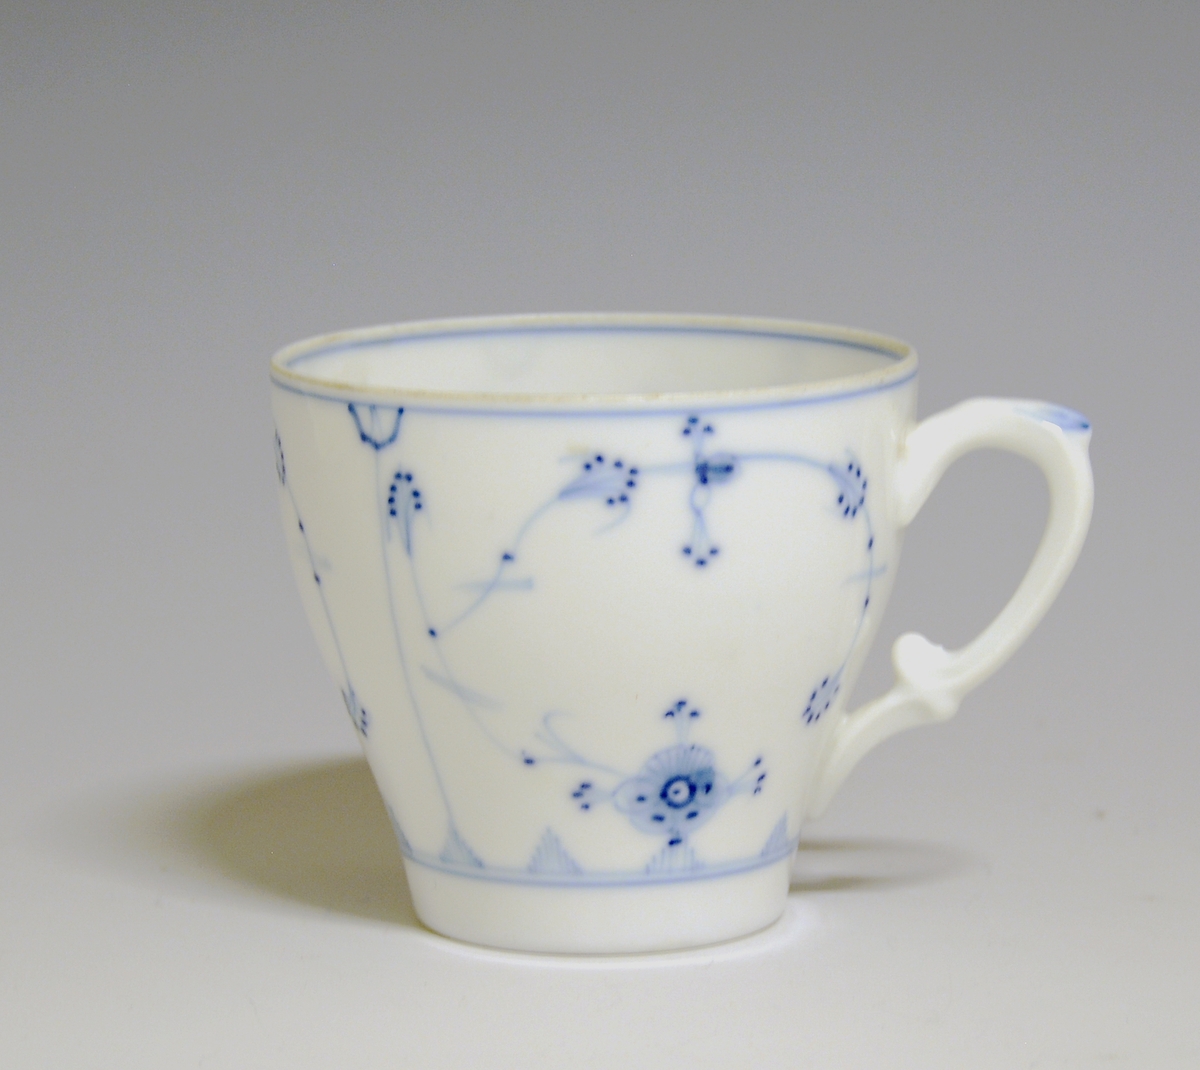 Kaffekopp av porselen med hvit glasur. Dekorert med stråmønster i blått.

Modellnr: 314.3, tilhører kaffe- og theservice 901.
Finnes i priskuranten for 1909